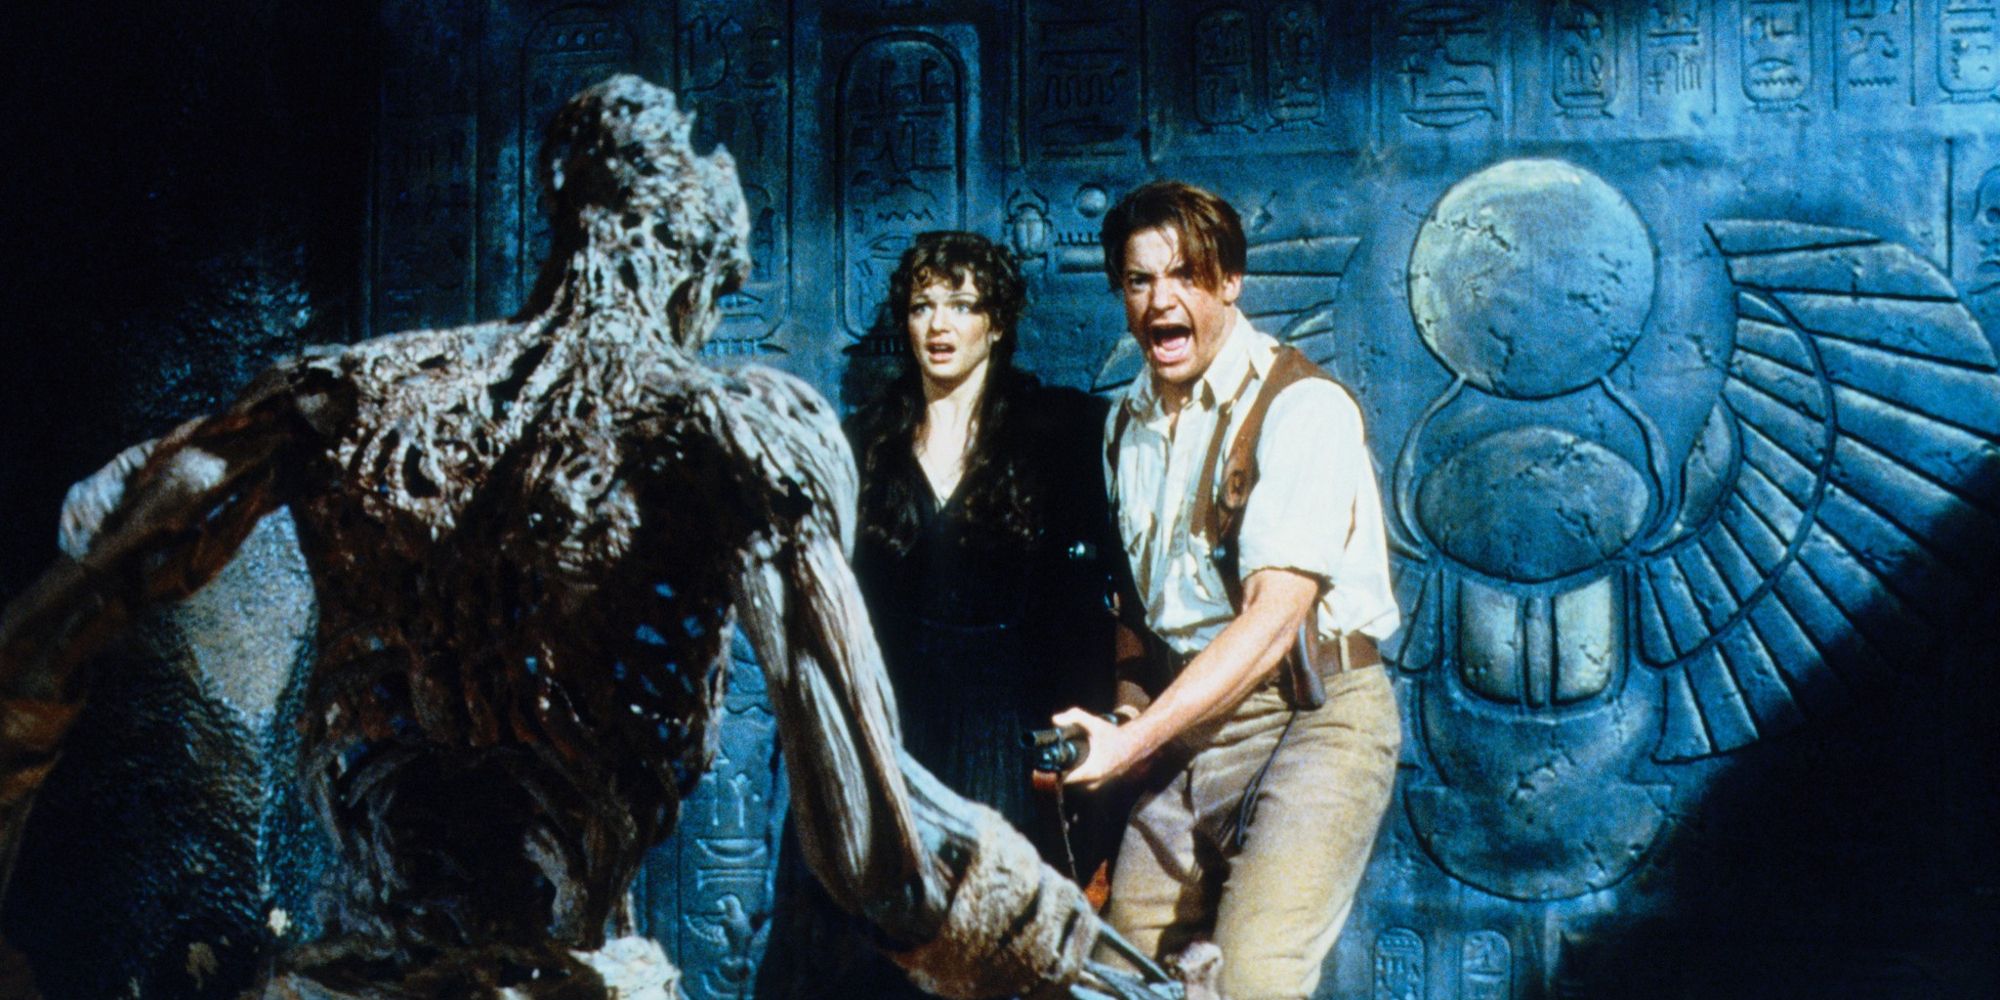 Rachel Weisz and Brenden Fraser in The Mummy